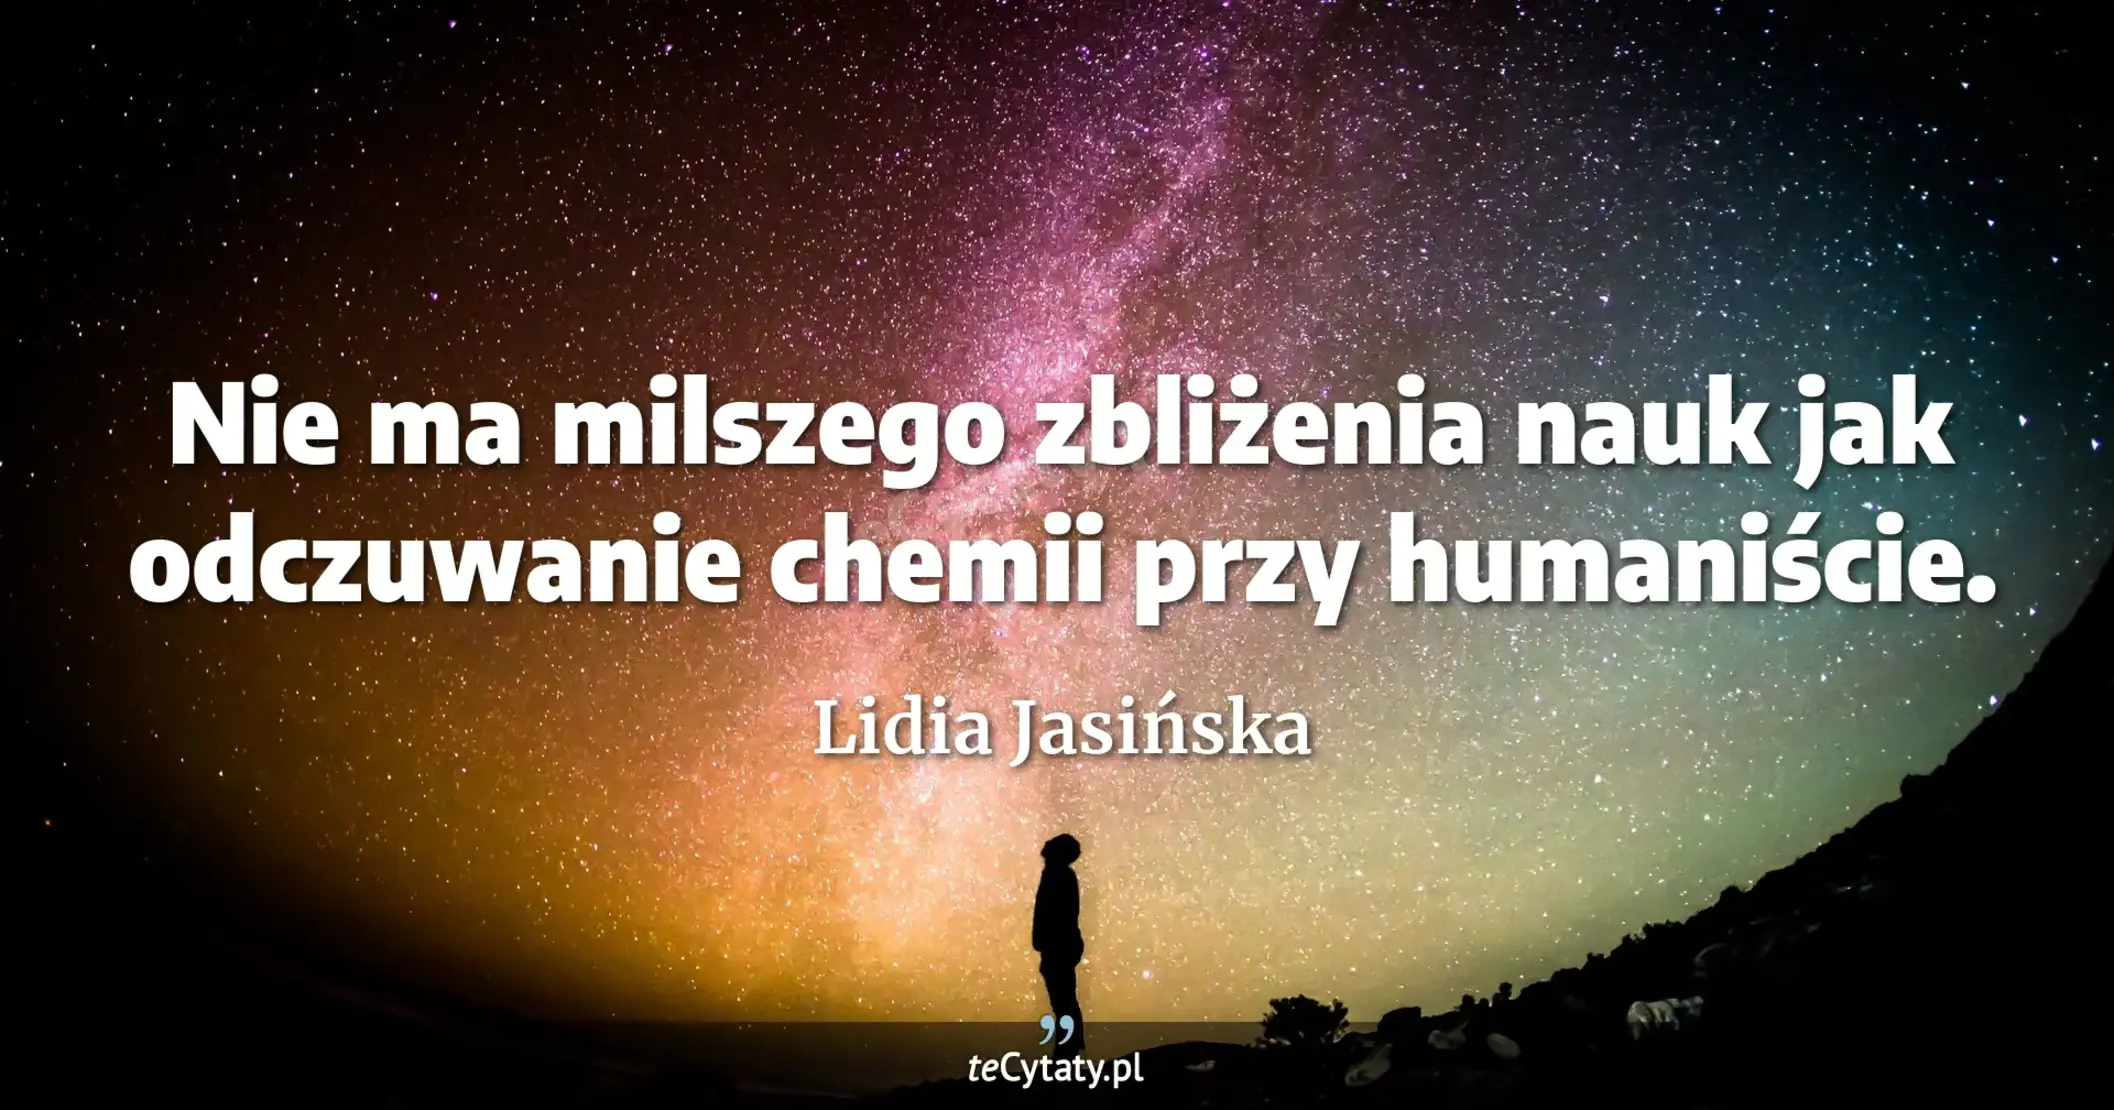 Nie ma milszego zbliżenia nauk jak odczuwanie chemii przy humaniście. - Lidia Jasińska